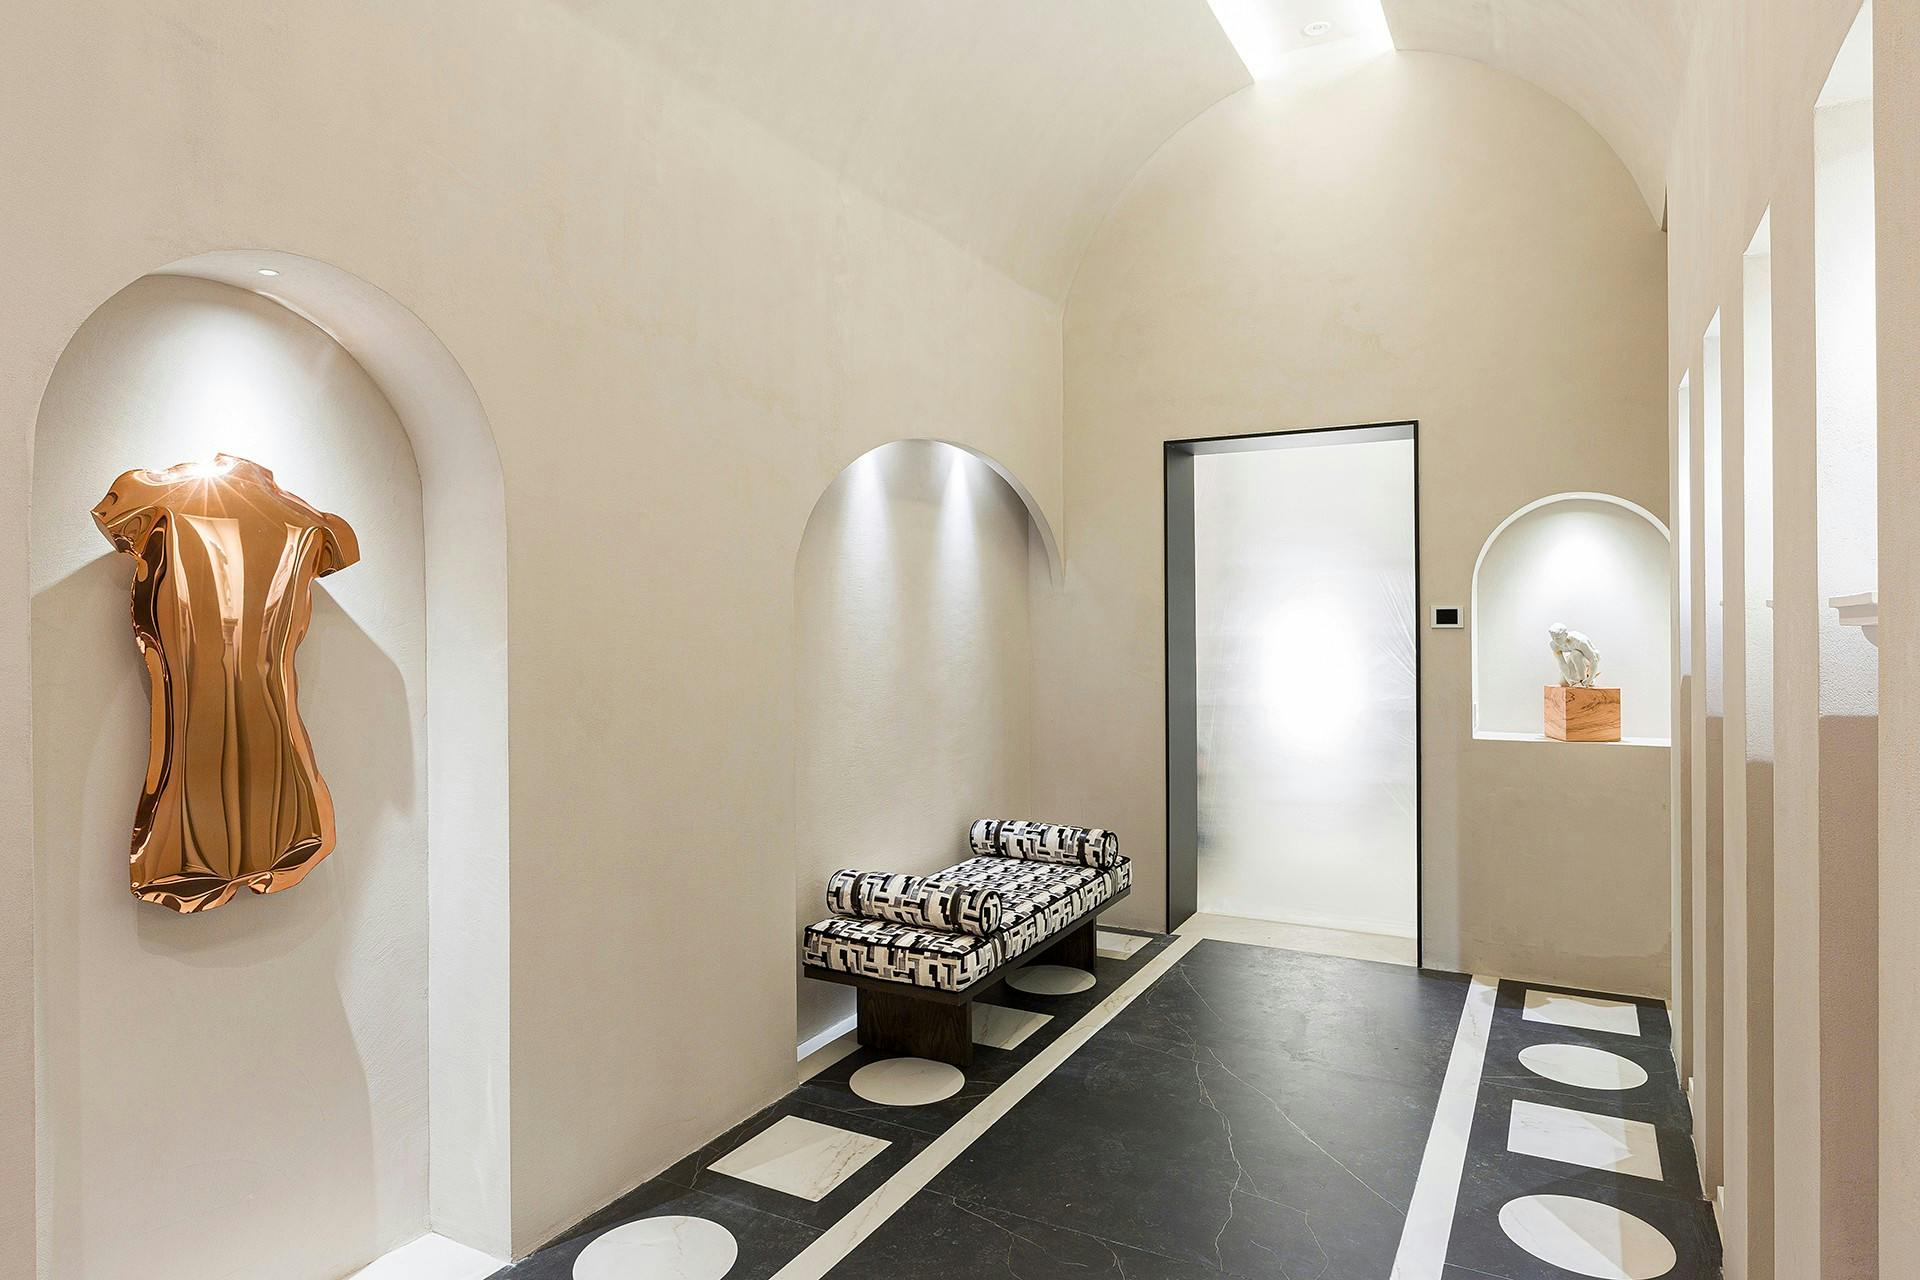 Bildnummer 33 des aktuellen Abschnitts von A contemporary public toilet design inspired by Roman public baths von Cosentino Österreich